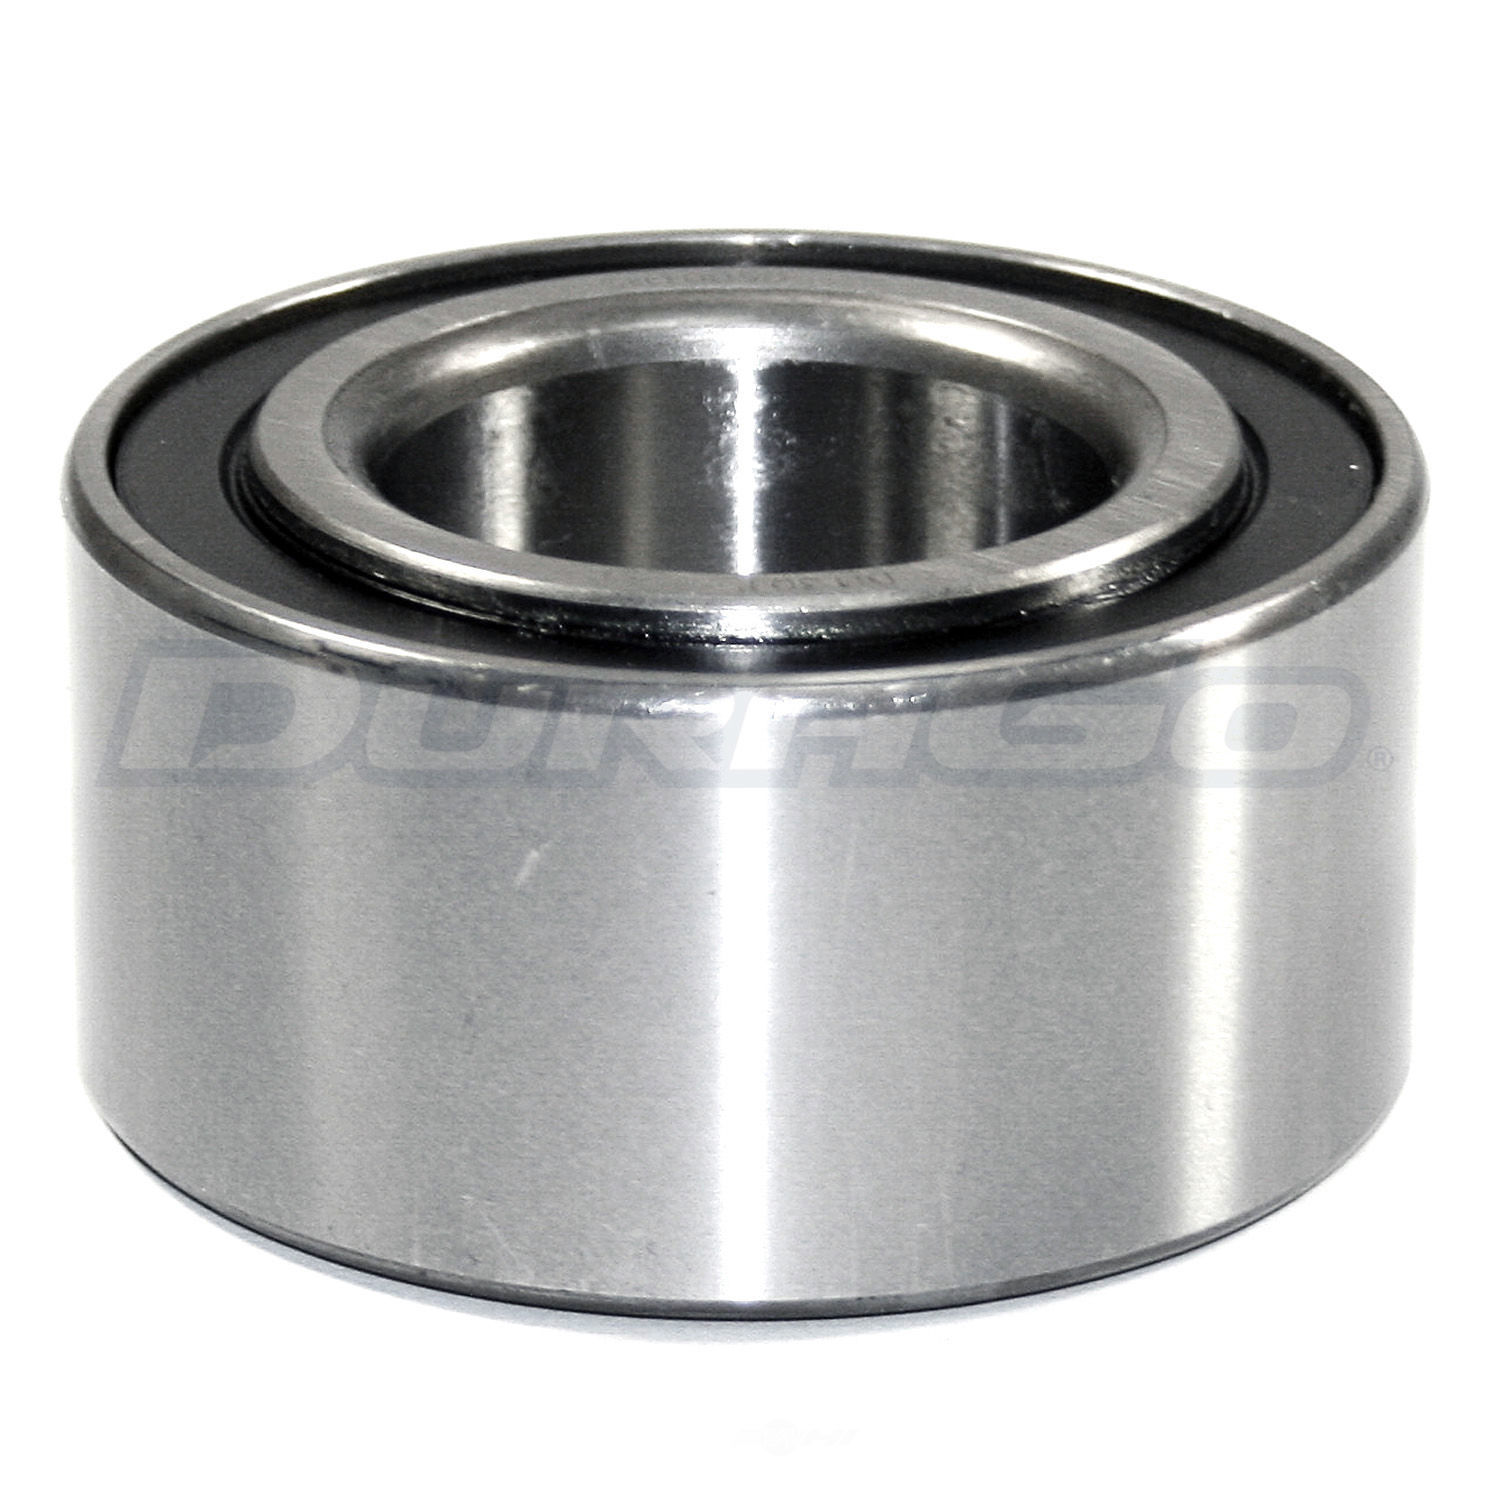 DURAGO - Wheel Bearing - D48 295-10050